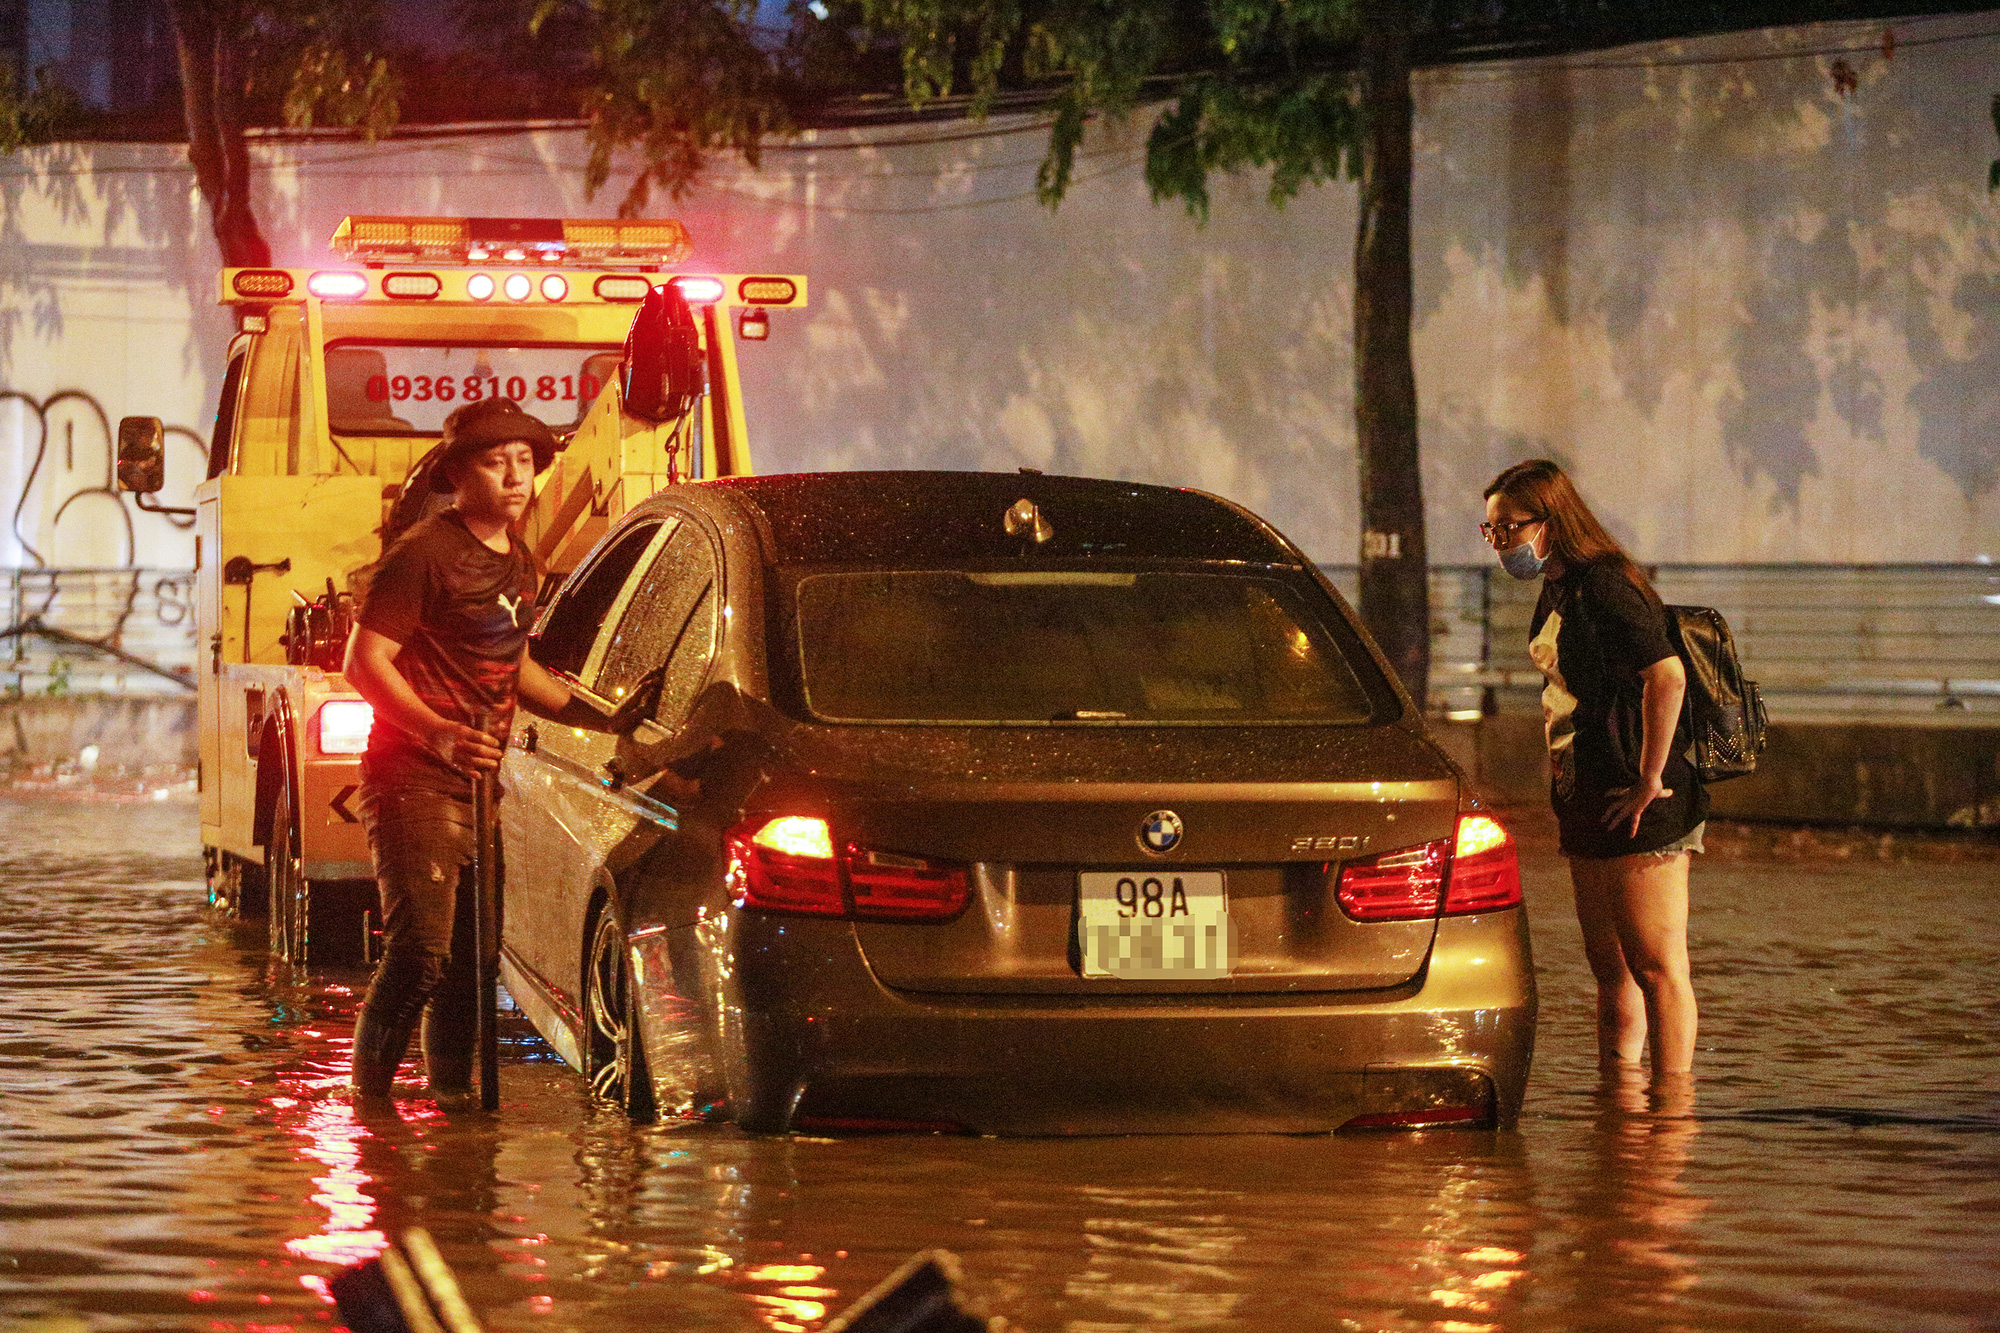 Người Sài Gòn khổ sở trong biển nước, Mercedes, Audi nằm dài chờ cứu hộ từ đêm tới sáng - Ảnh 2.